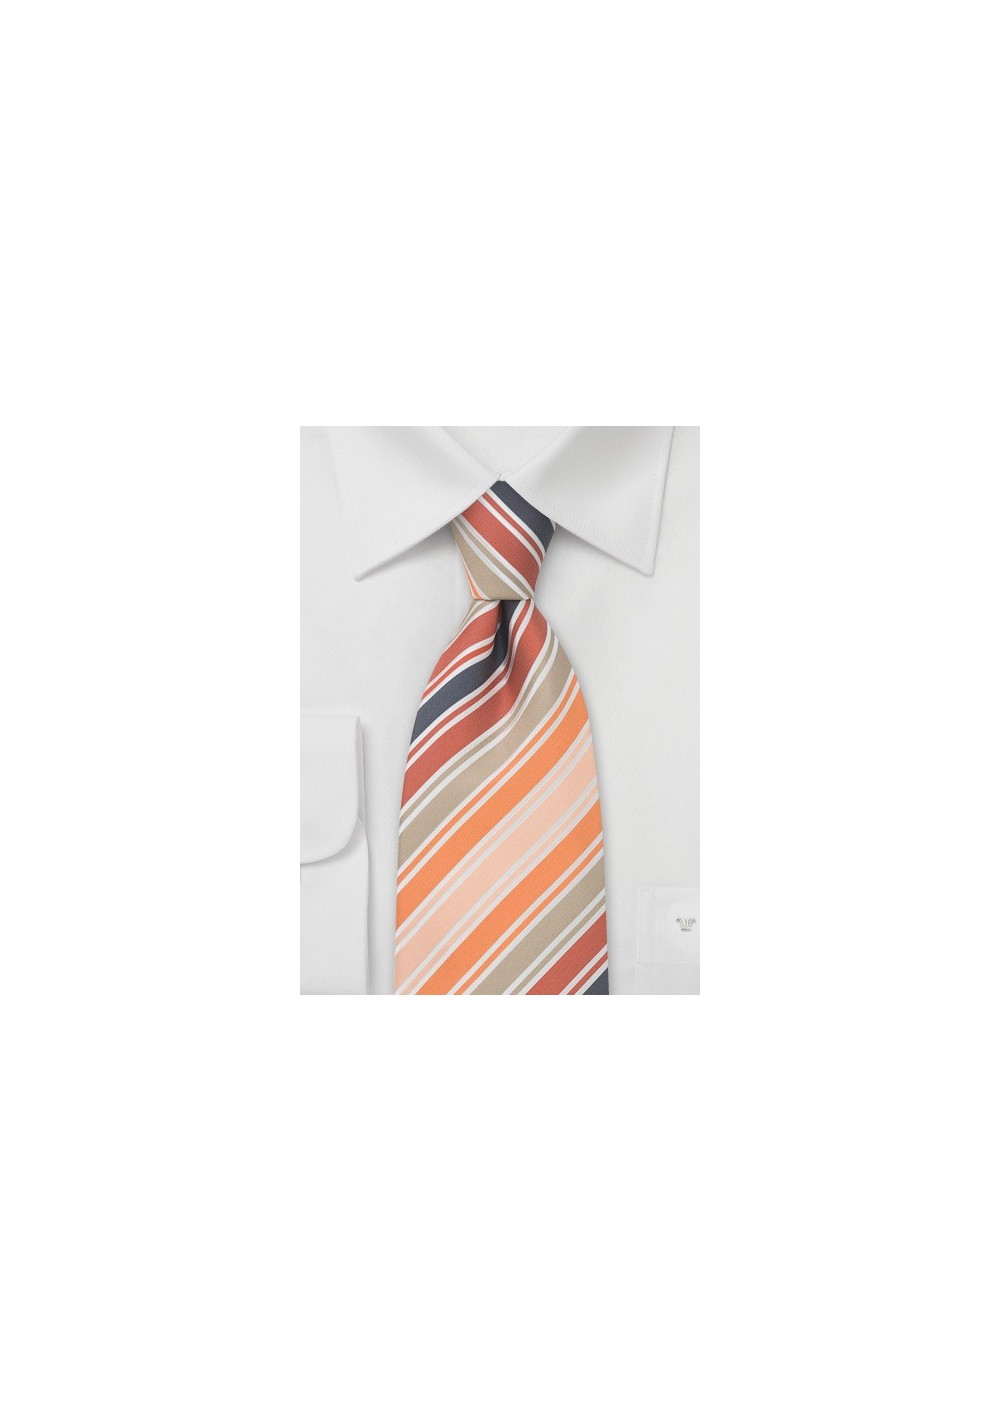 Modern Orange Striped Silk Tie by Cavallieri